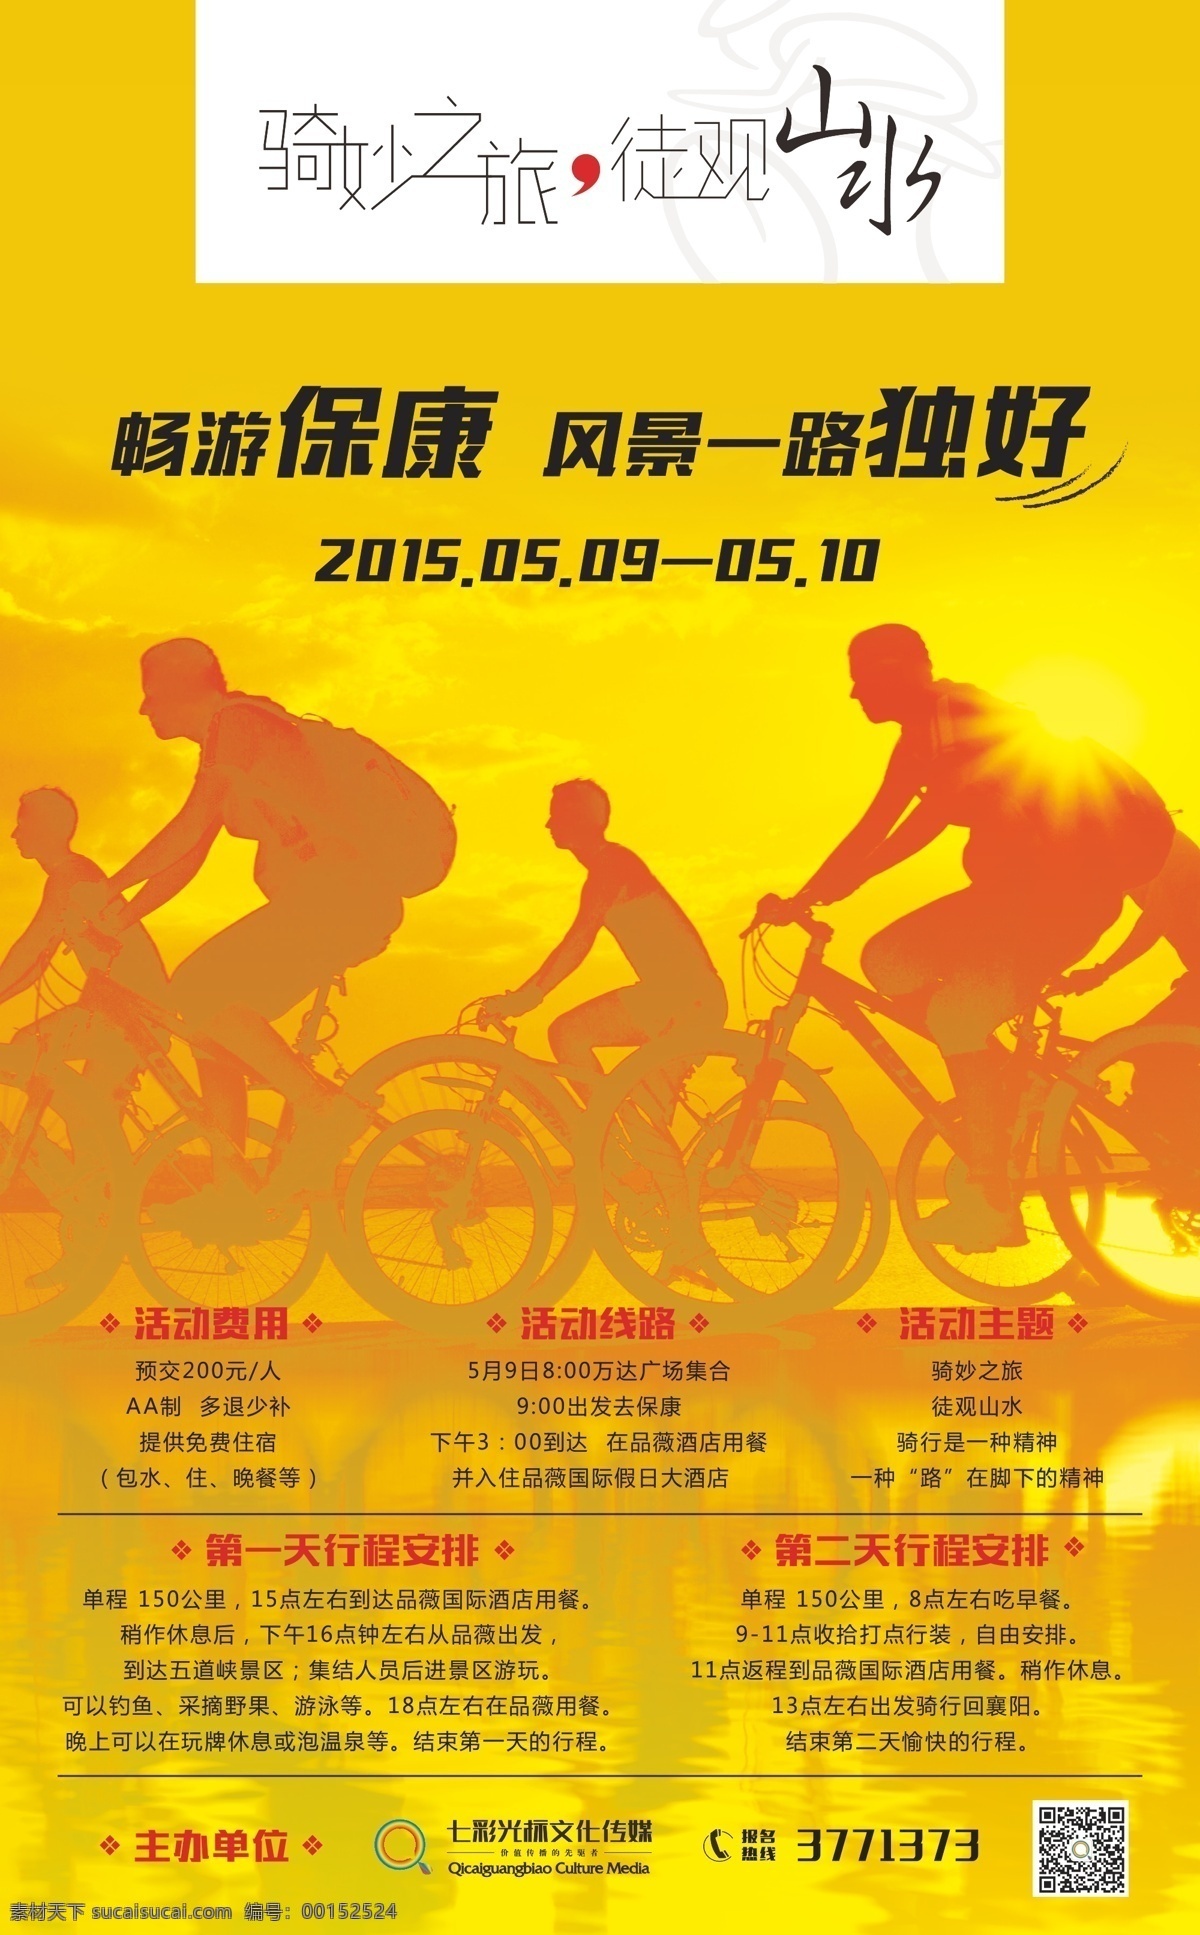 自由行 骑行 自行车 海报 旅游 单车 户外运动 运动 户外 夕阳 画册 文案 策划 活动